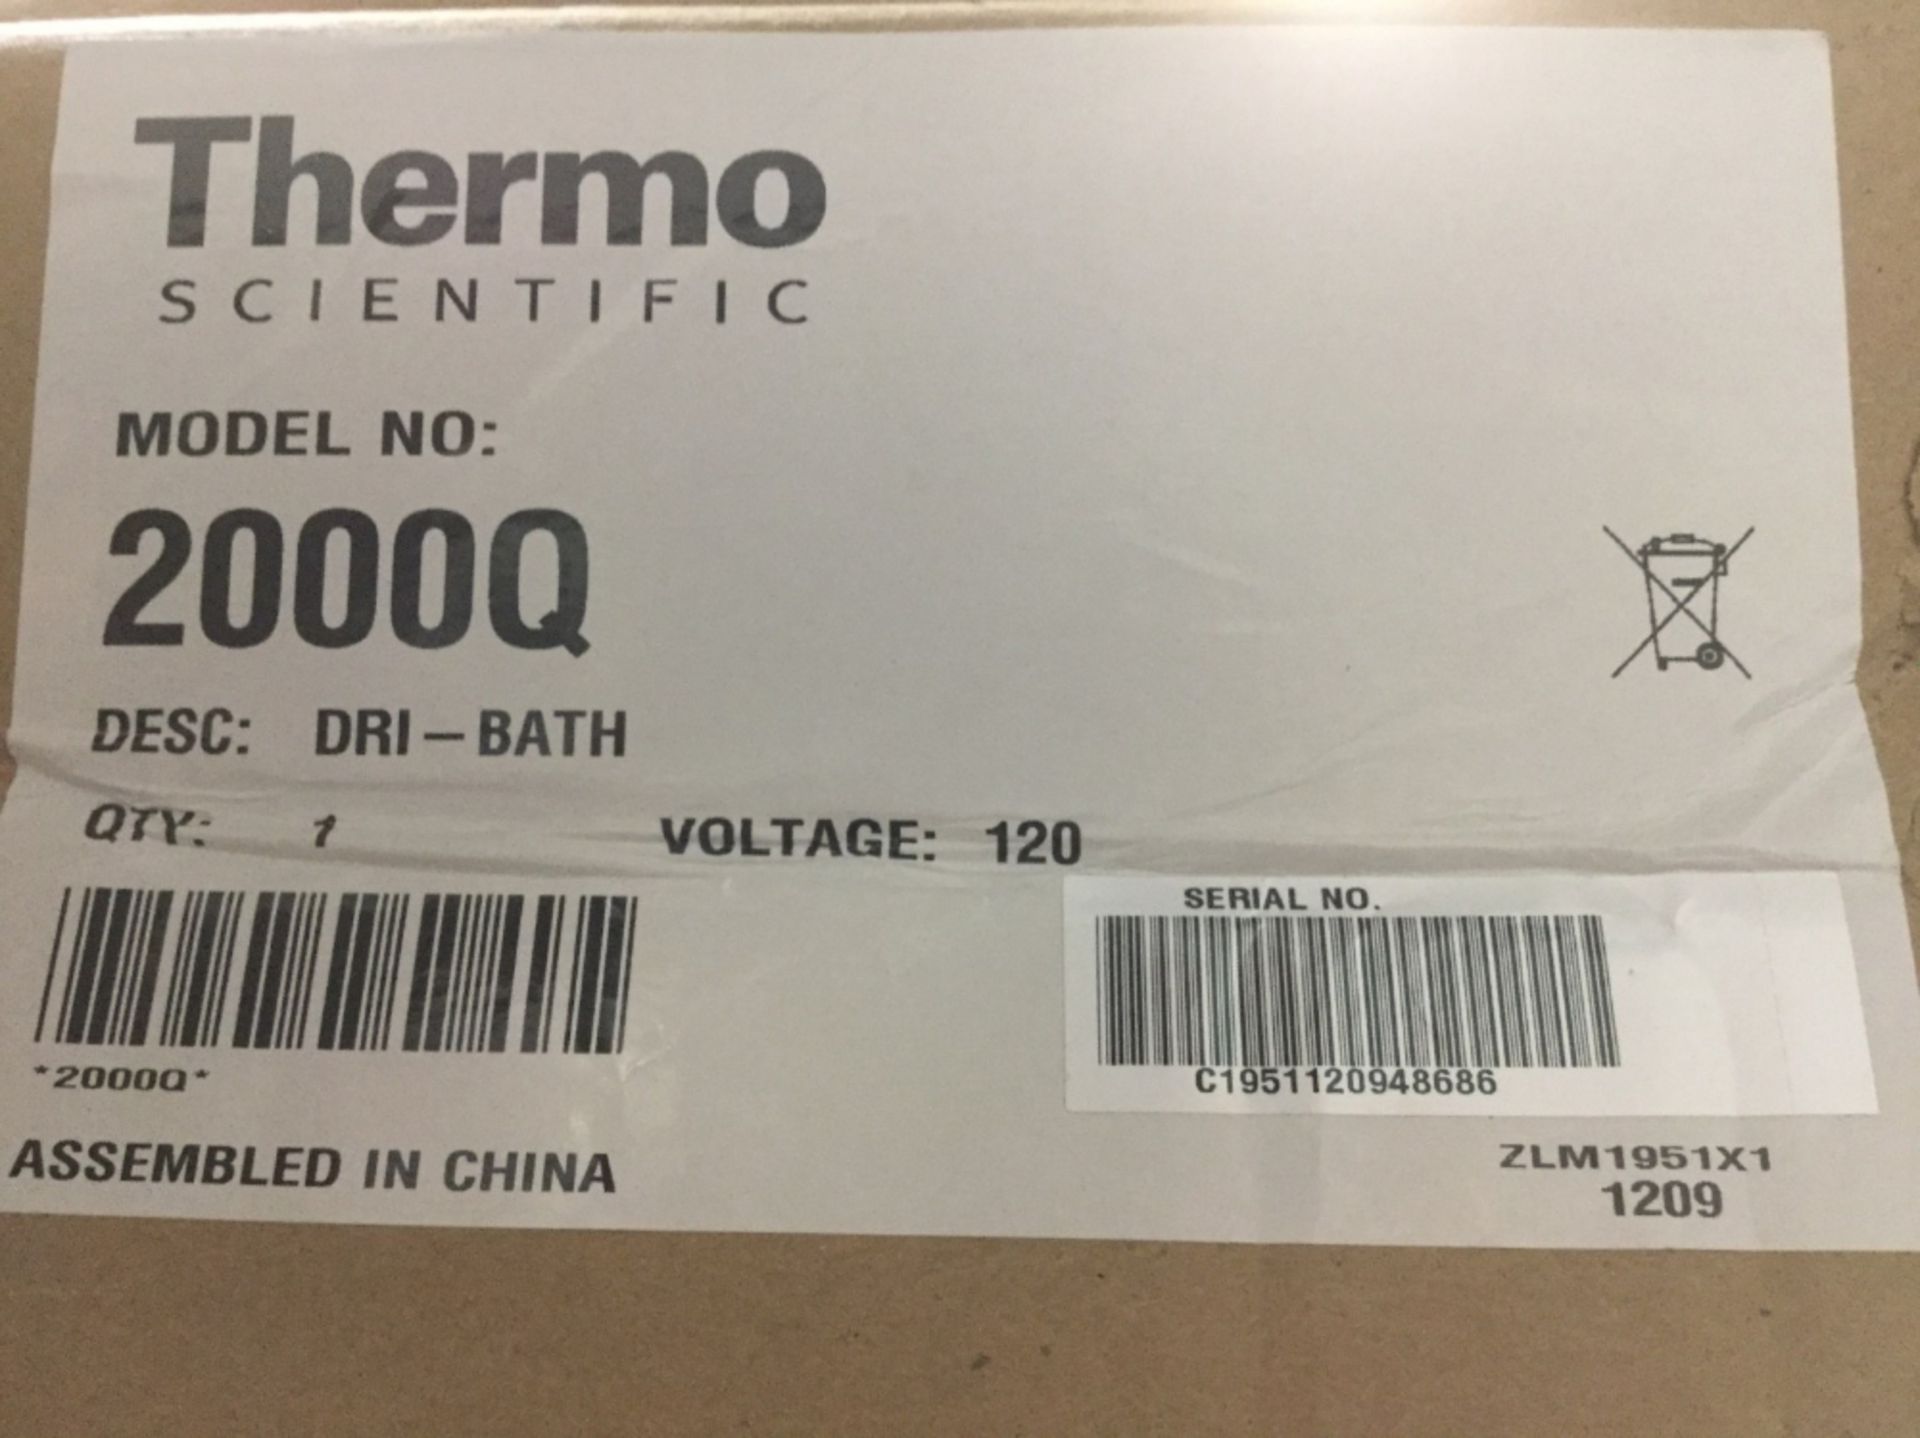 Thermo Scientific 2000Q Multi-Blok Dri-Bath, New In Box - Image 3 of 3